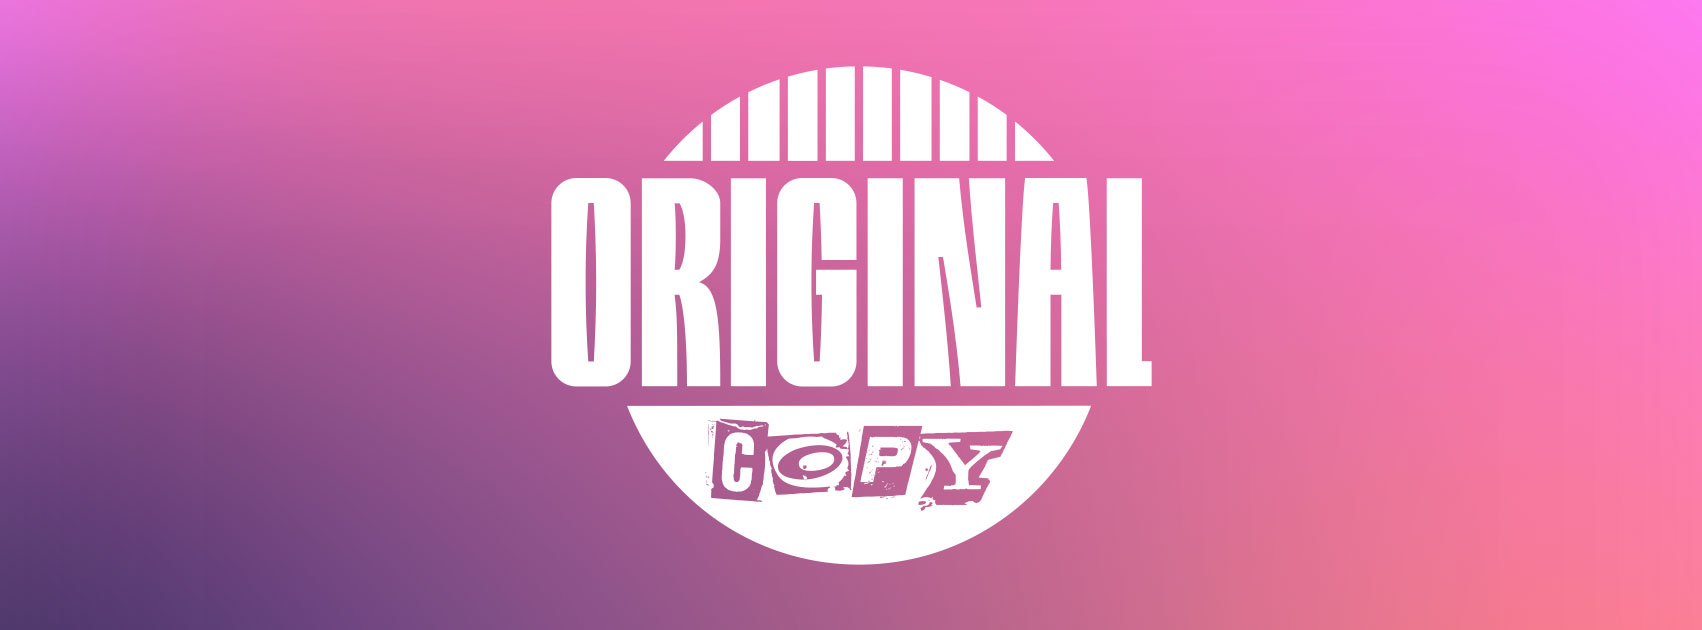 DJ Cuppy – Cold Heart Killer Ft. Darkoo (Original Copy Album)